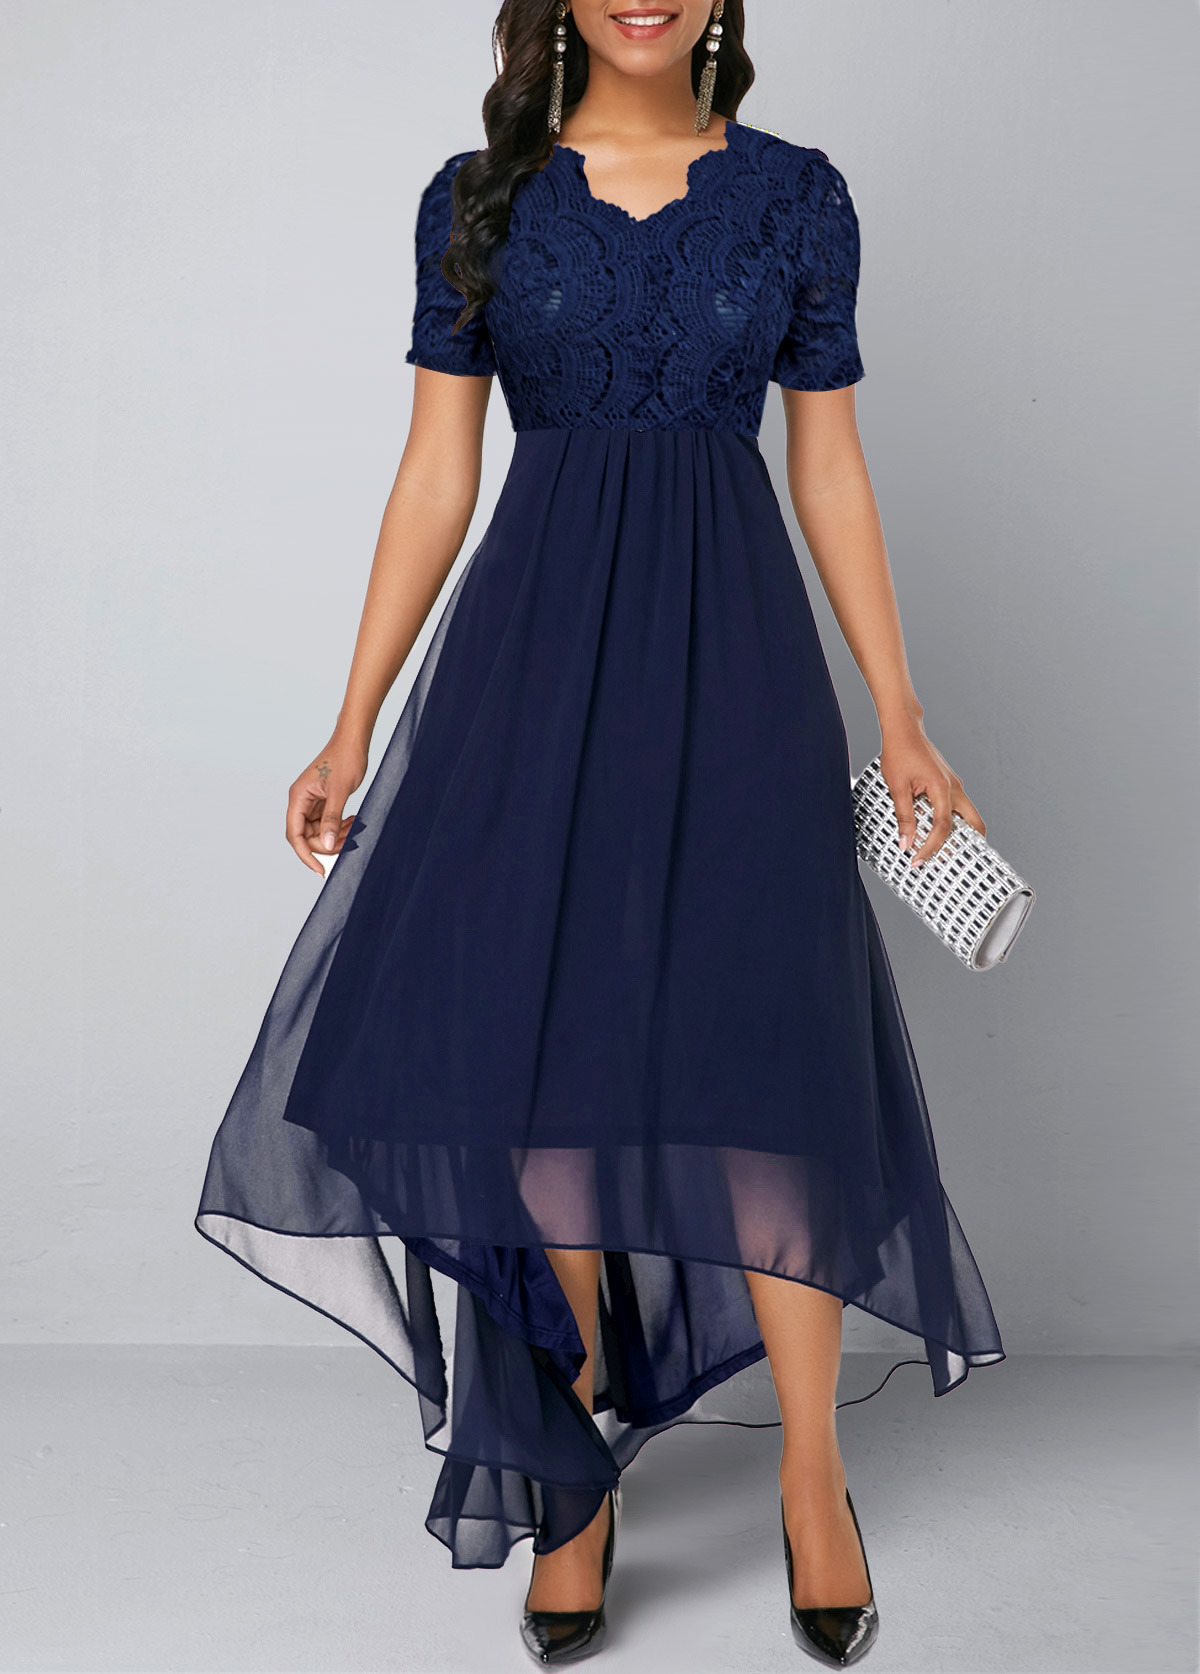 ROTITA Lace Stitching Asymmetric Hem Navy Blue Chiffon Dress